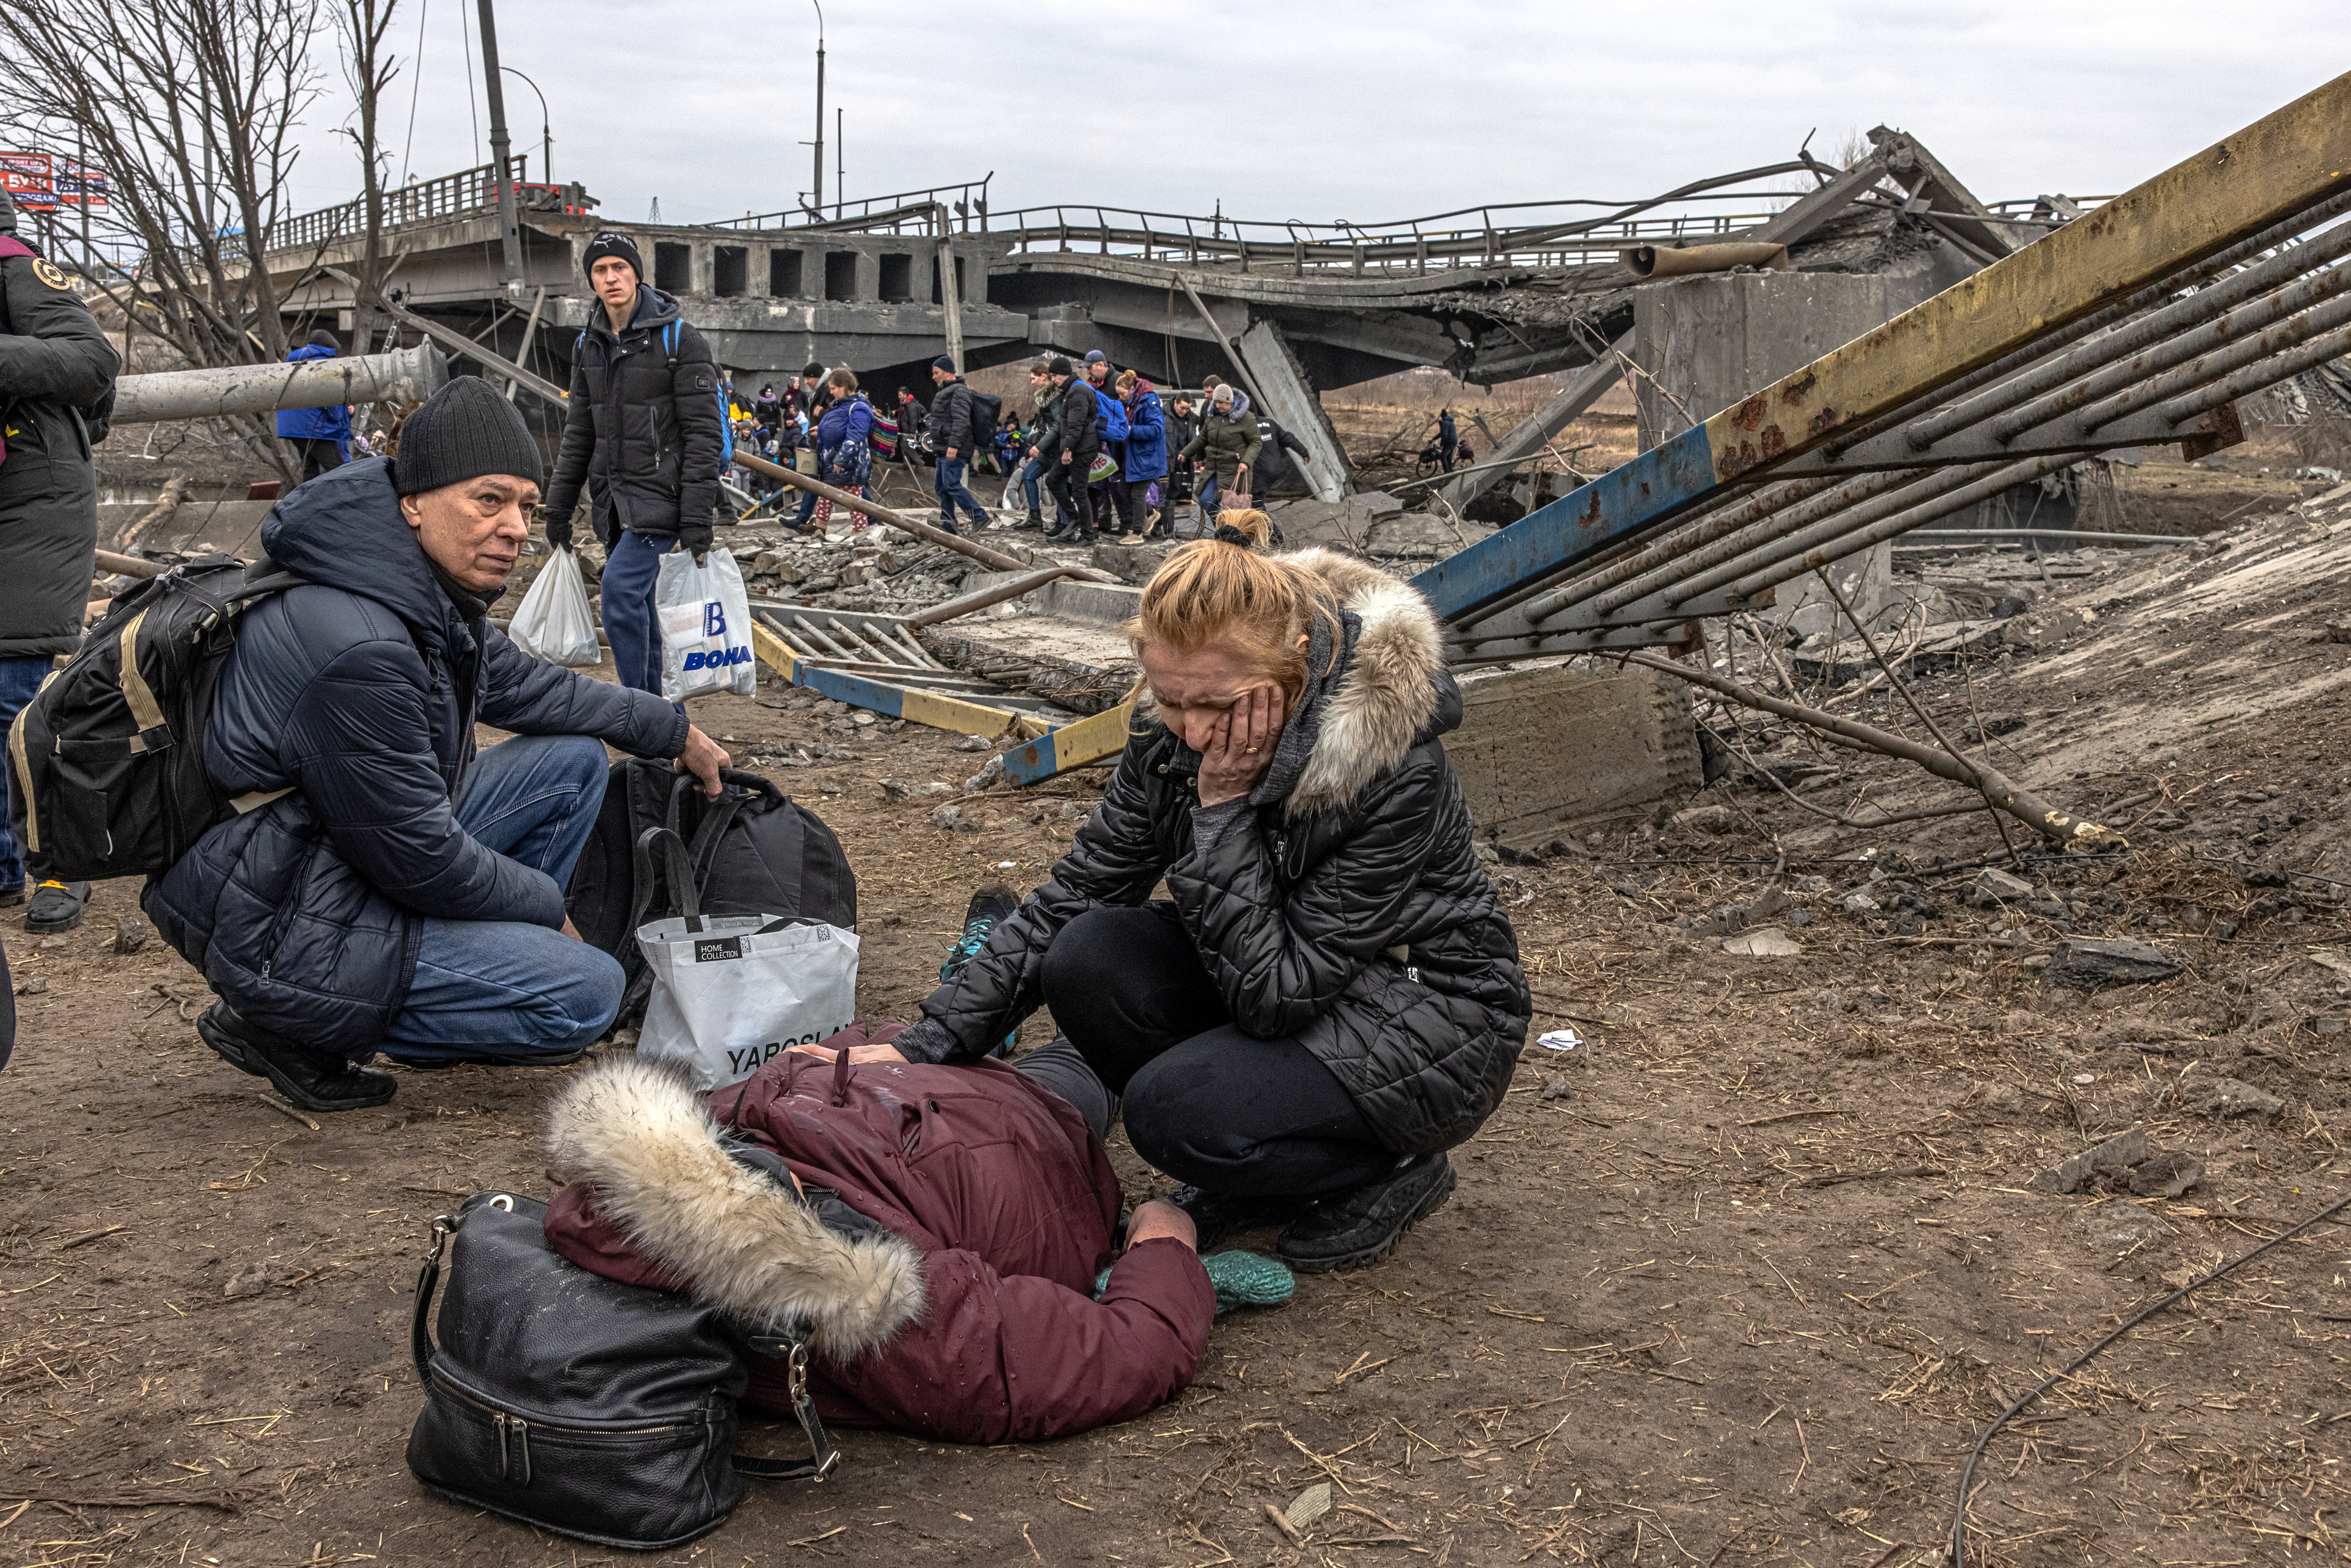 Eine Frau flüchtet mit ihrem Kind aus Kiew am 7. März 2022